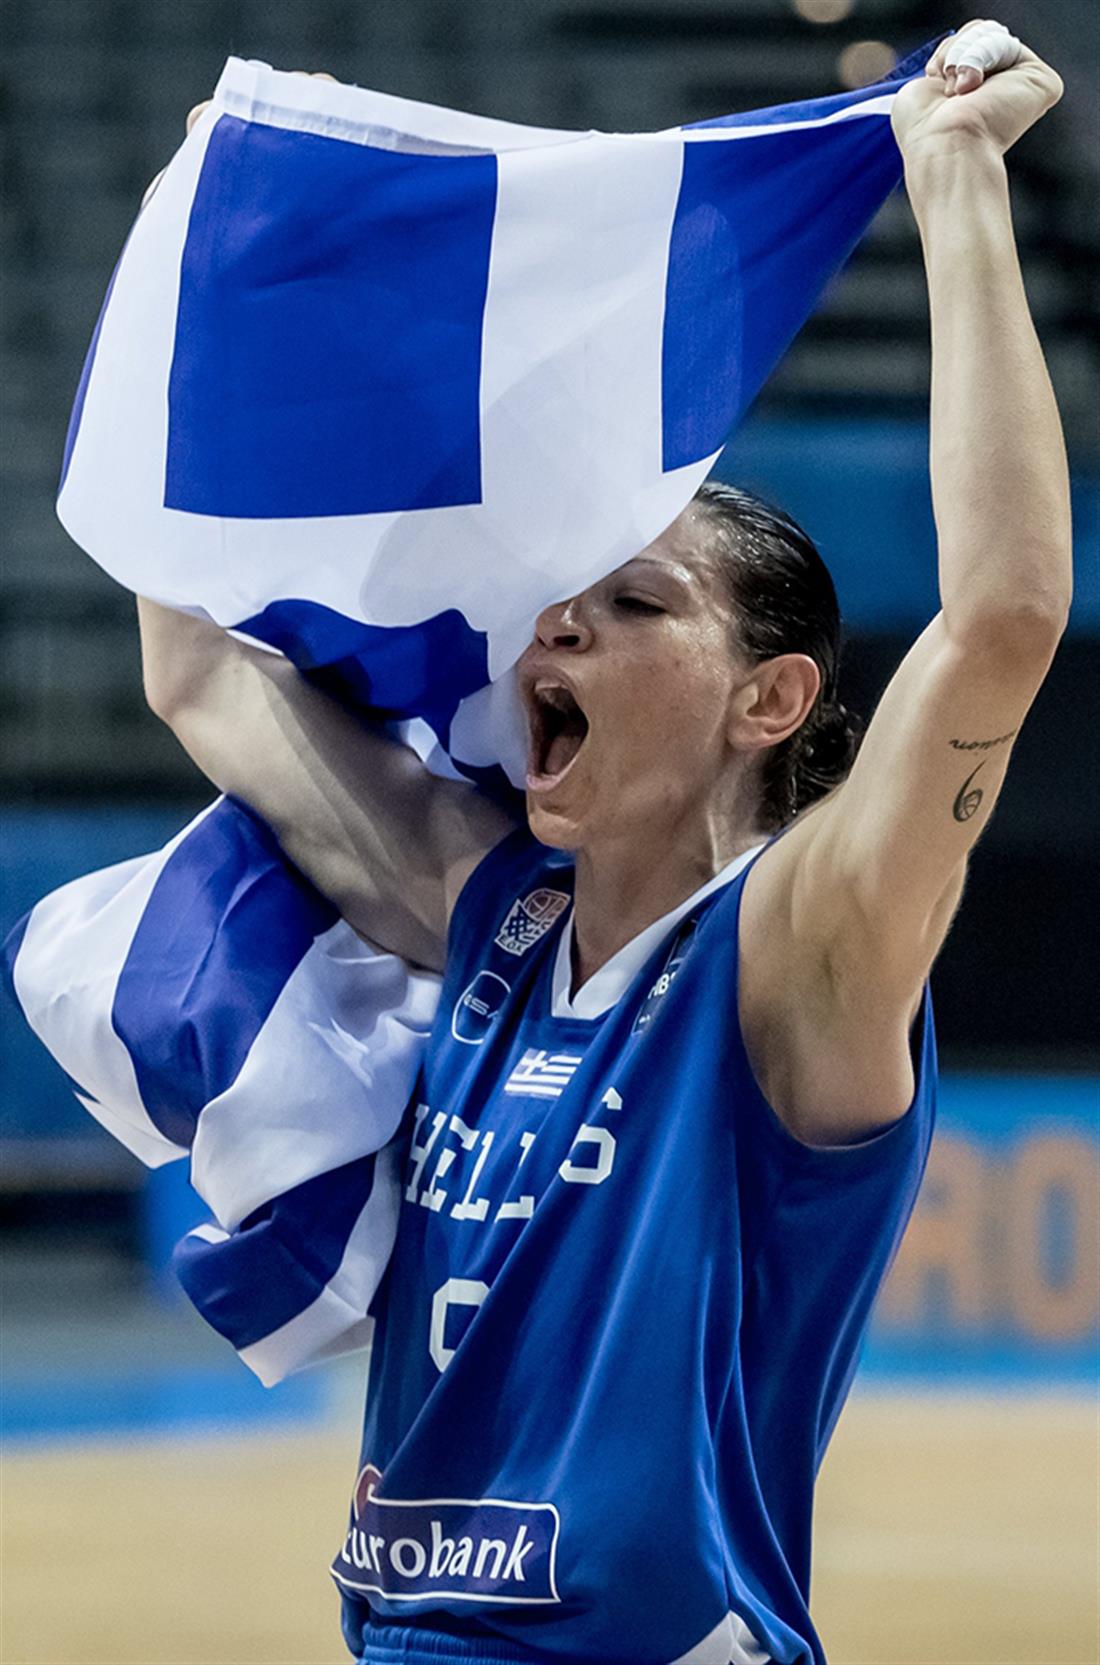 Εβίνα Μάλτση - μπασκετμπολίστρια